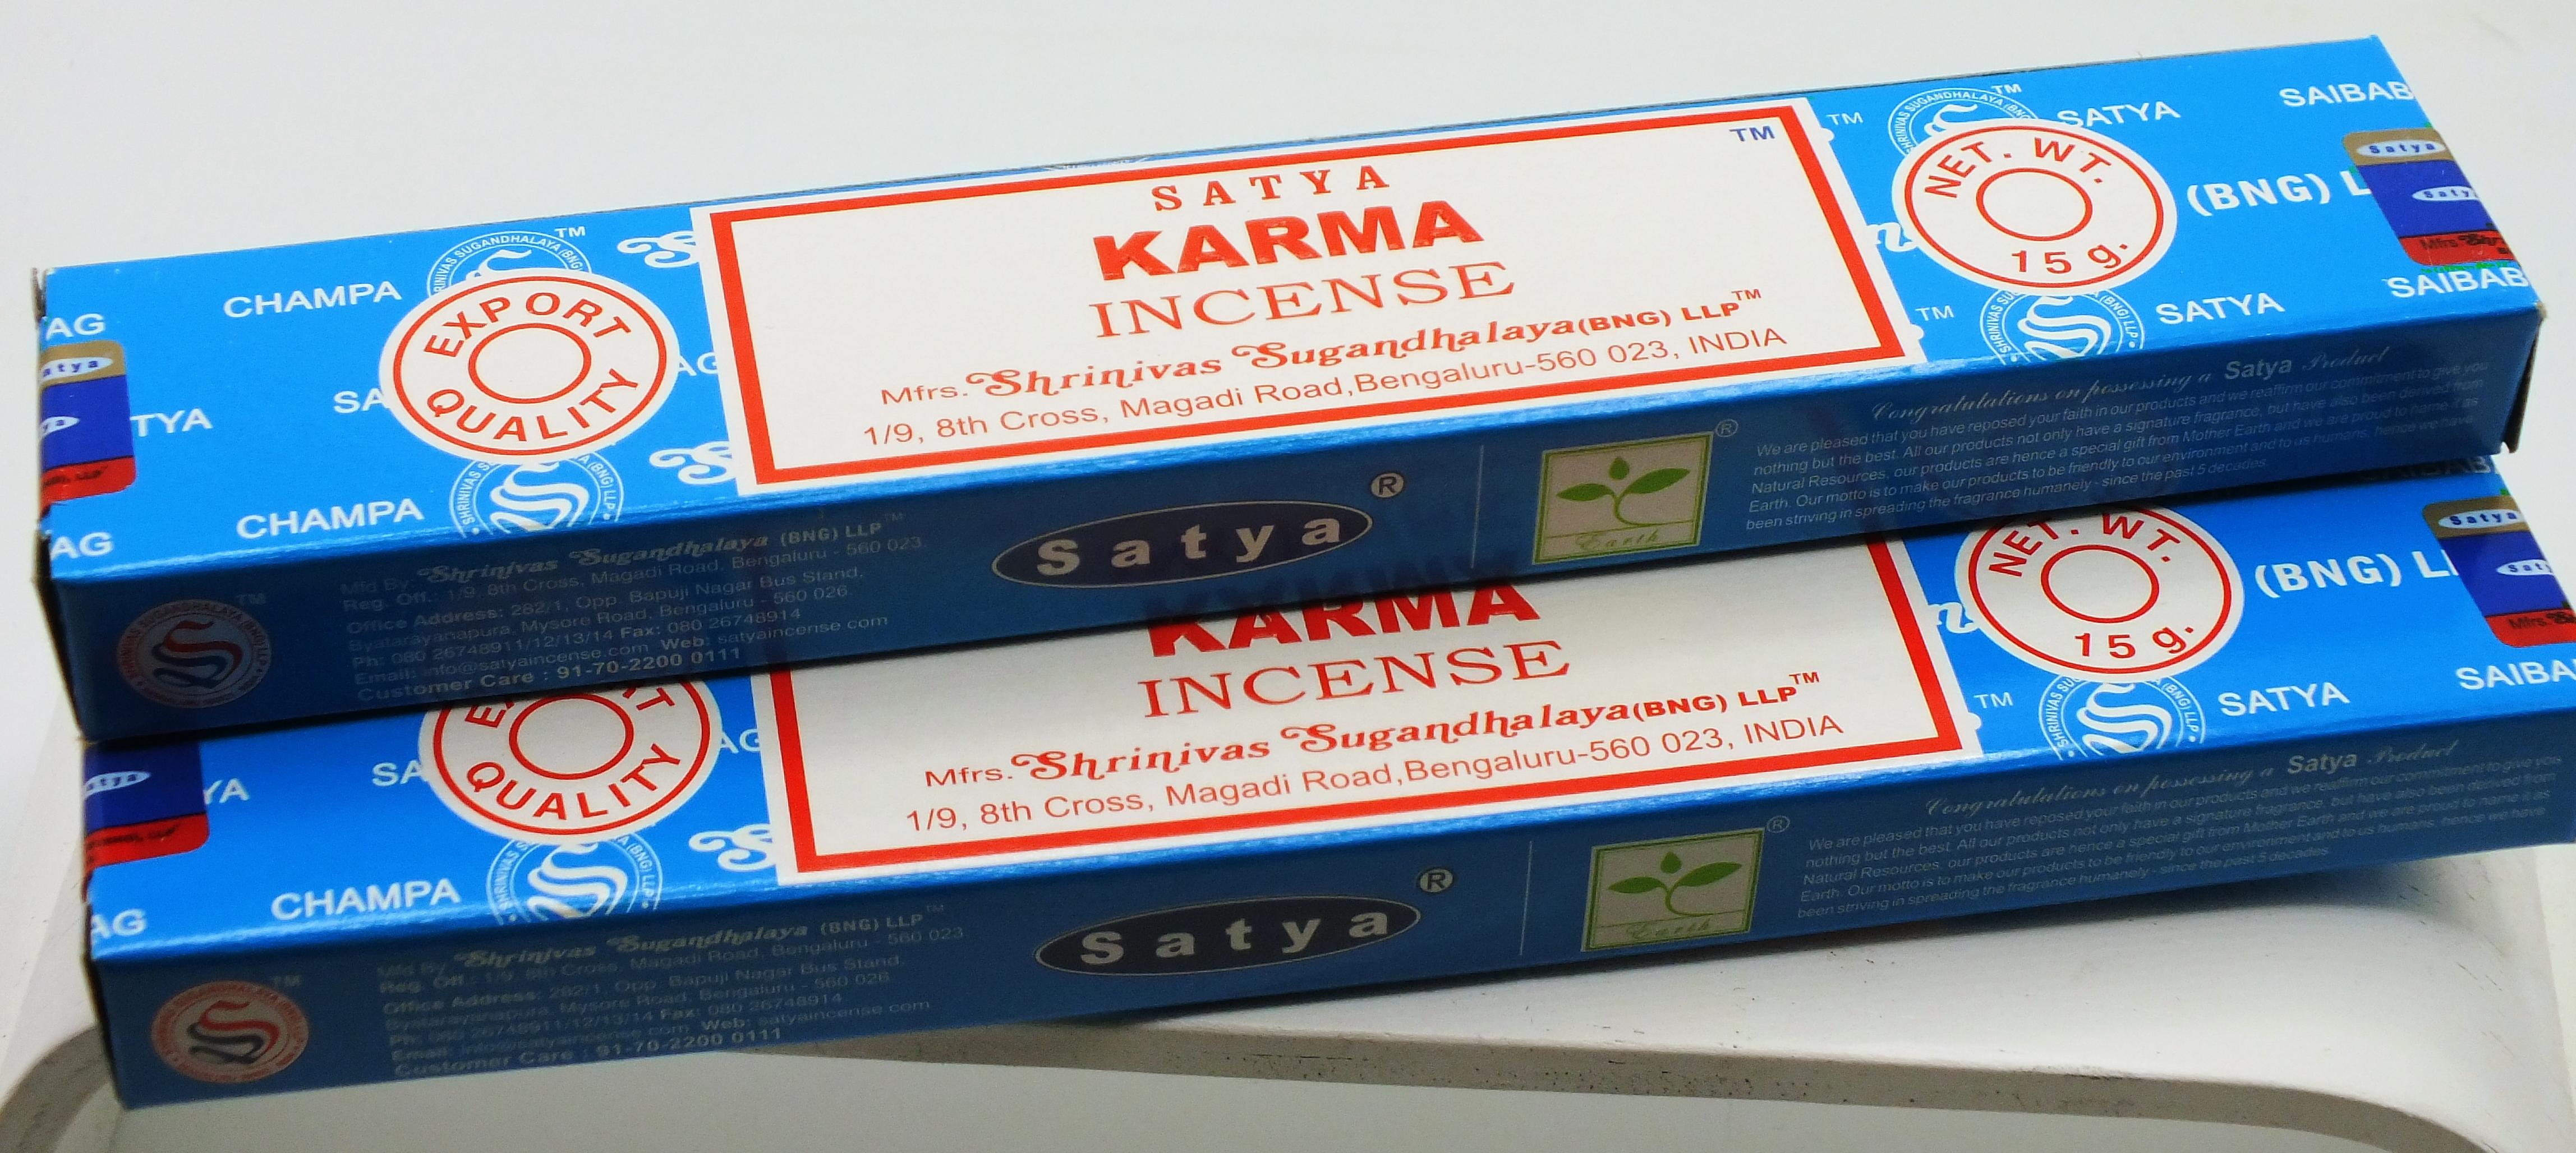 Karma Satya Incense Sticks 15 gram Box